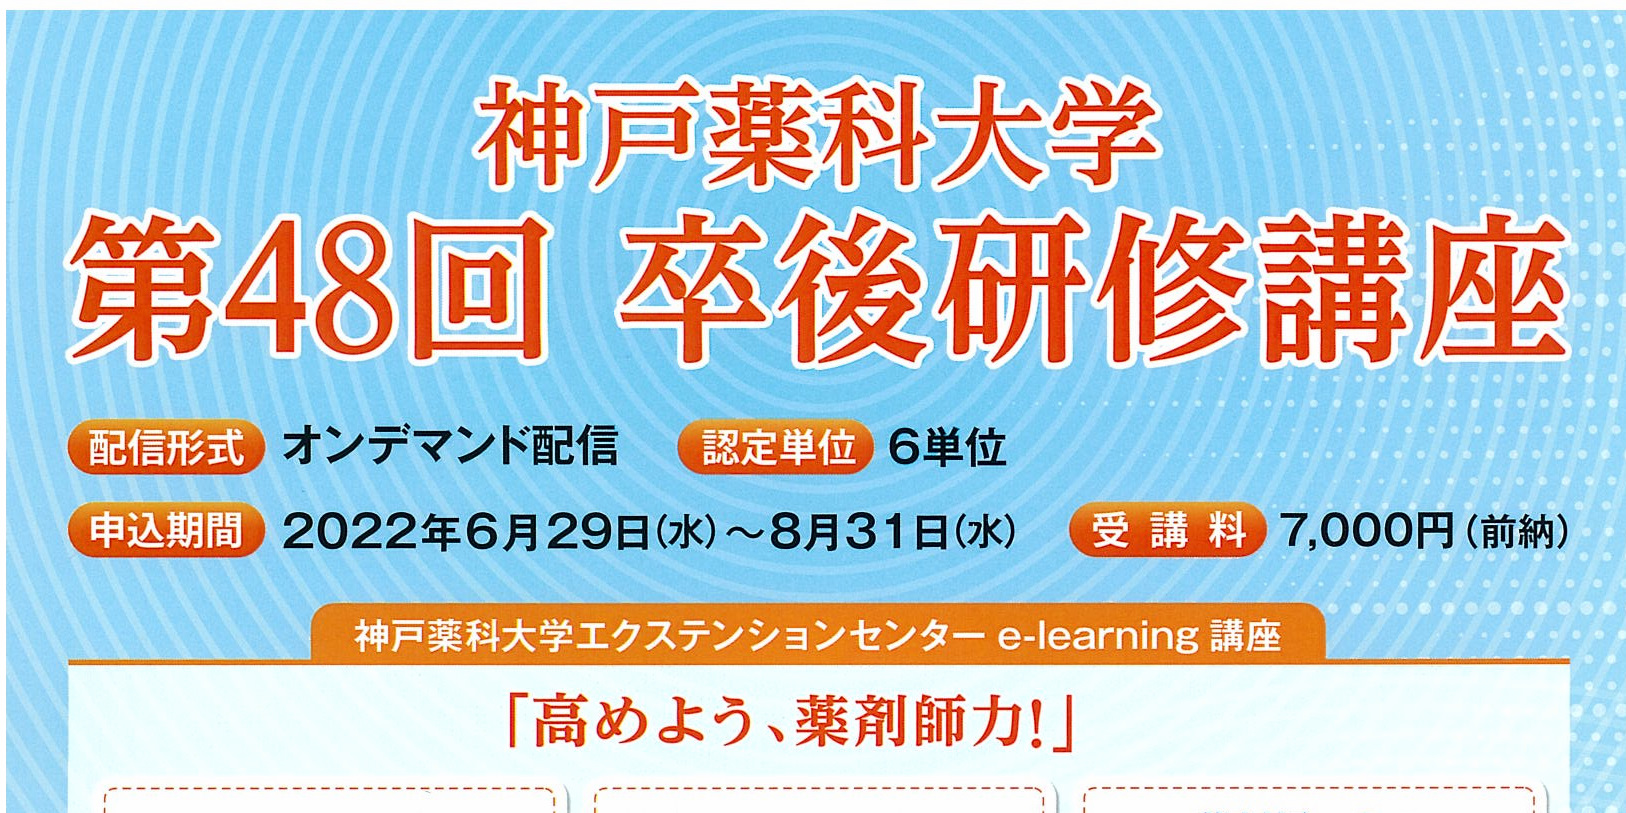 第48回卒後研修講座（e-learning講座）の開催について（2020/6/29）